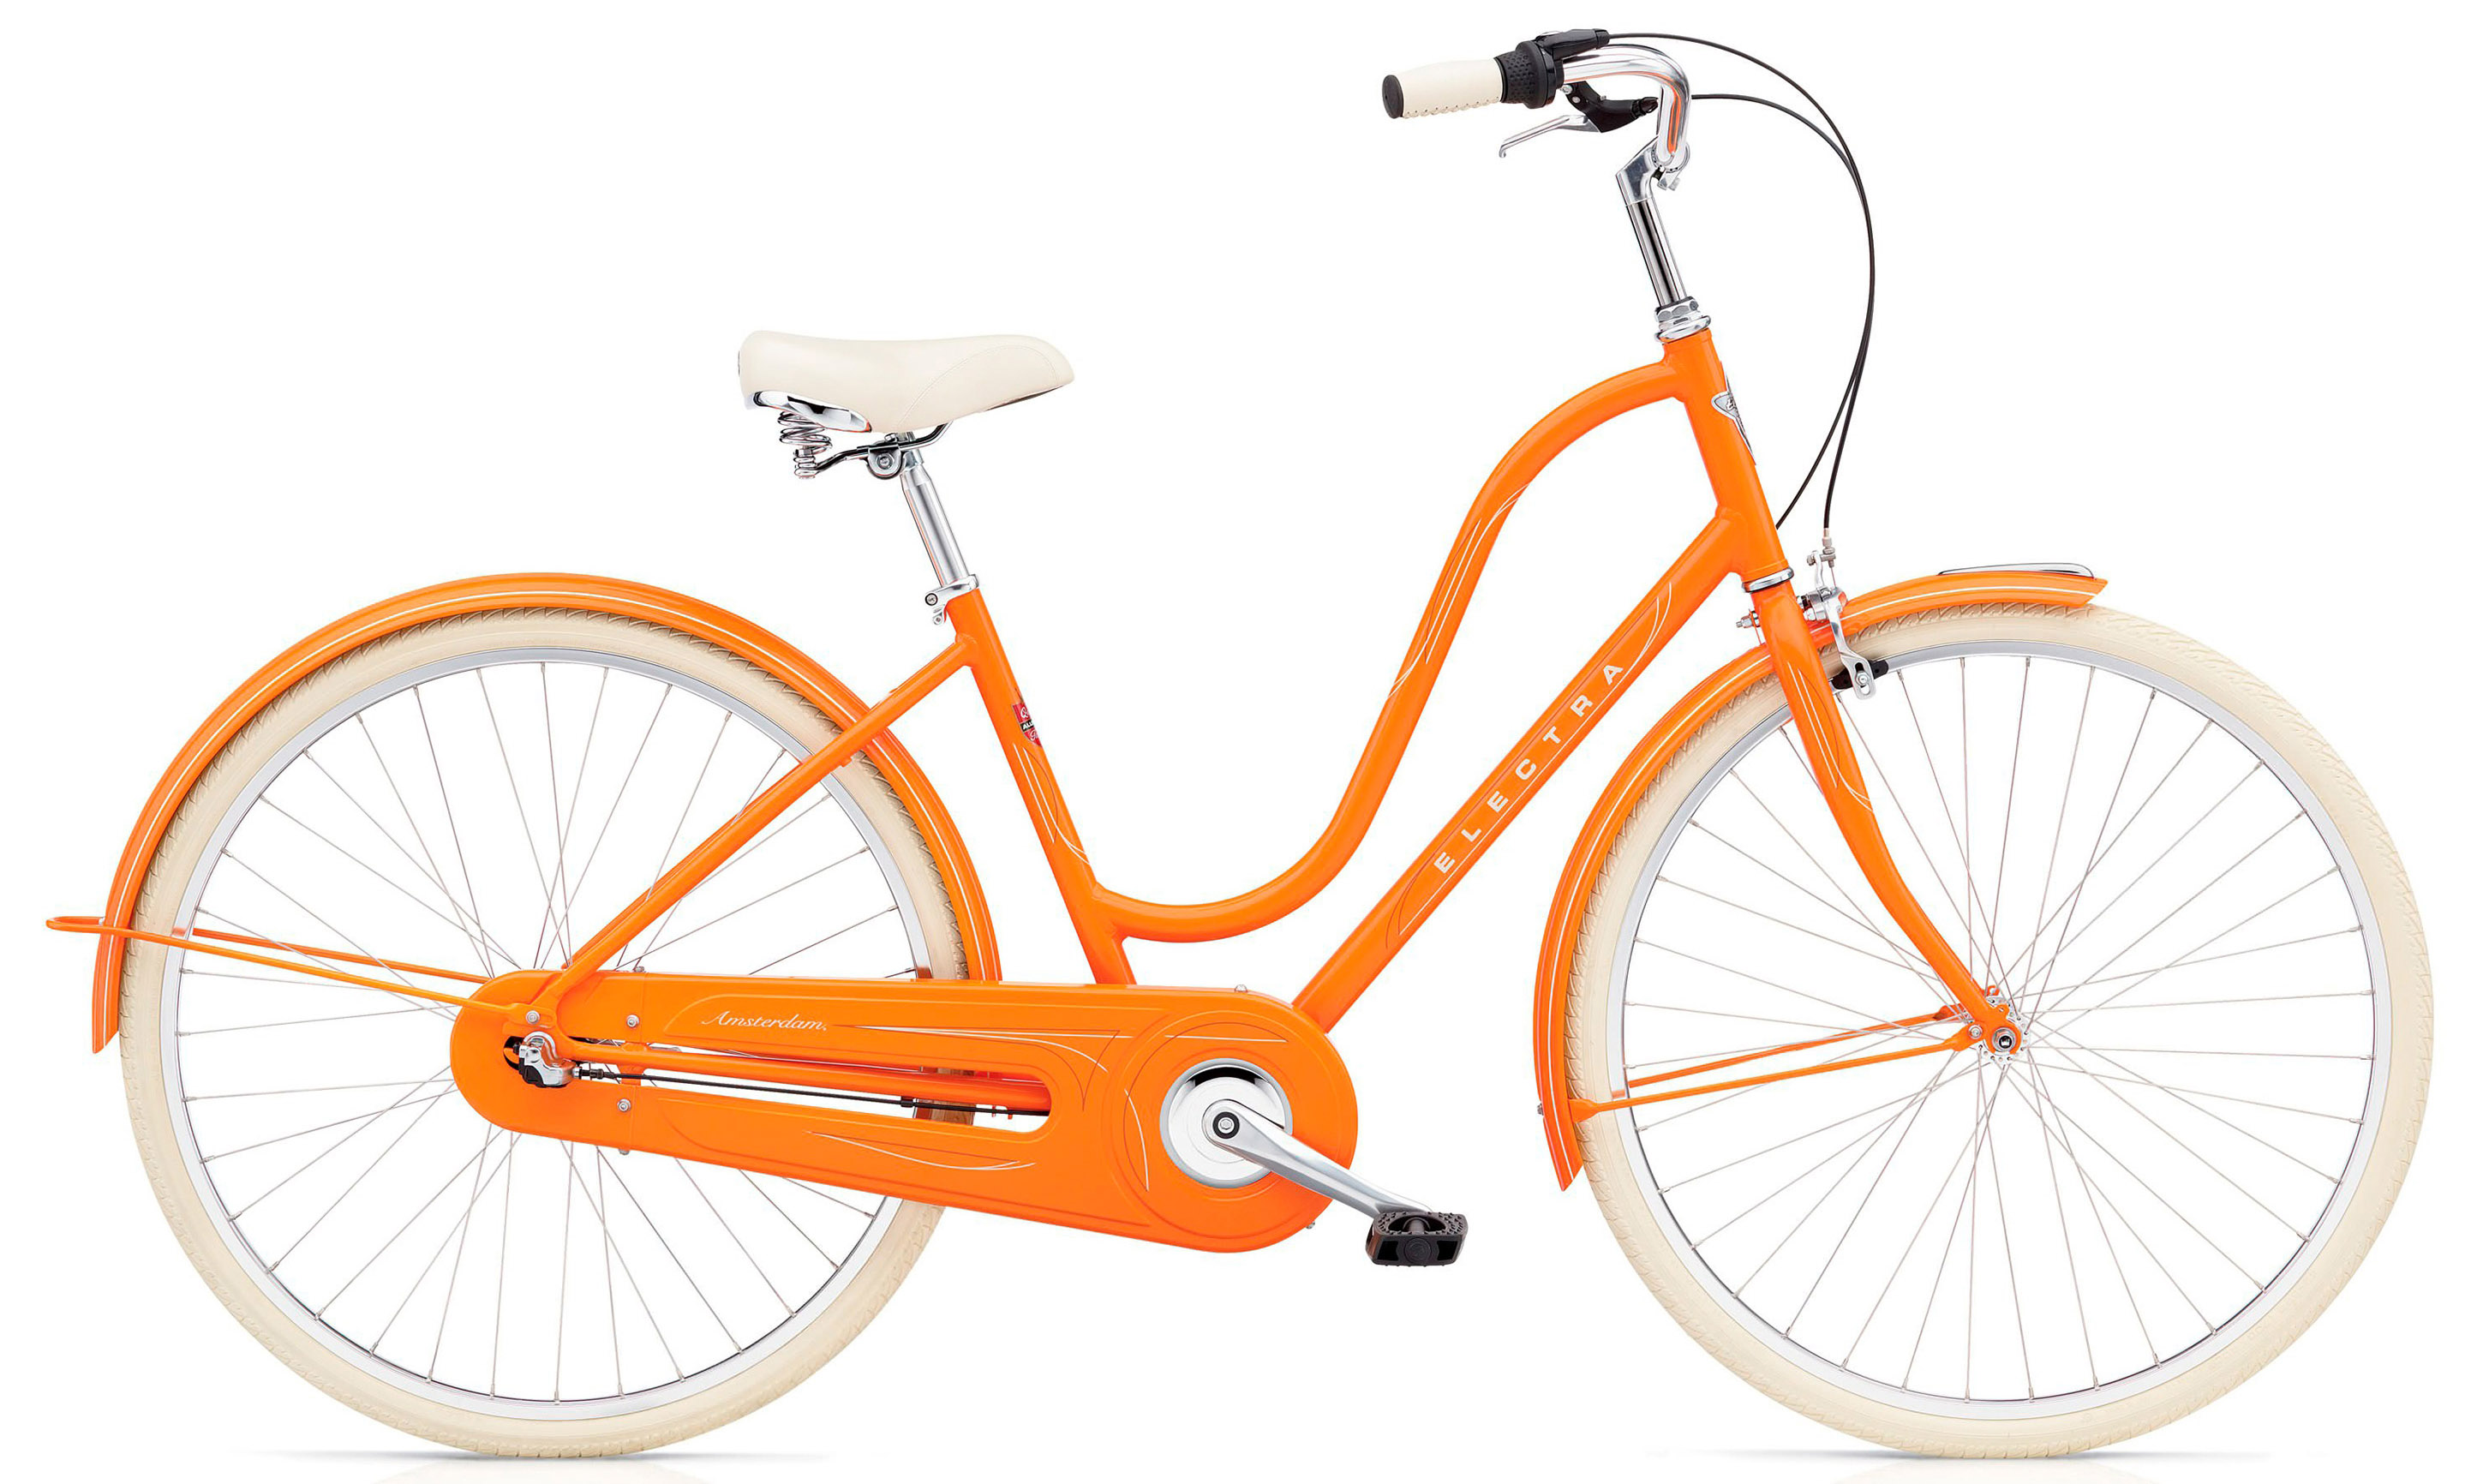  Отзывы о Женском велосипеде Electra Amsterdam Original 3i Ladies 2020